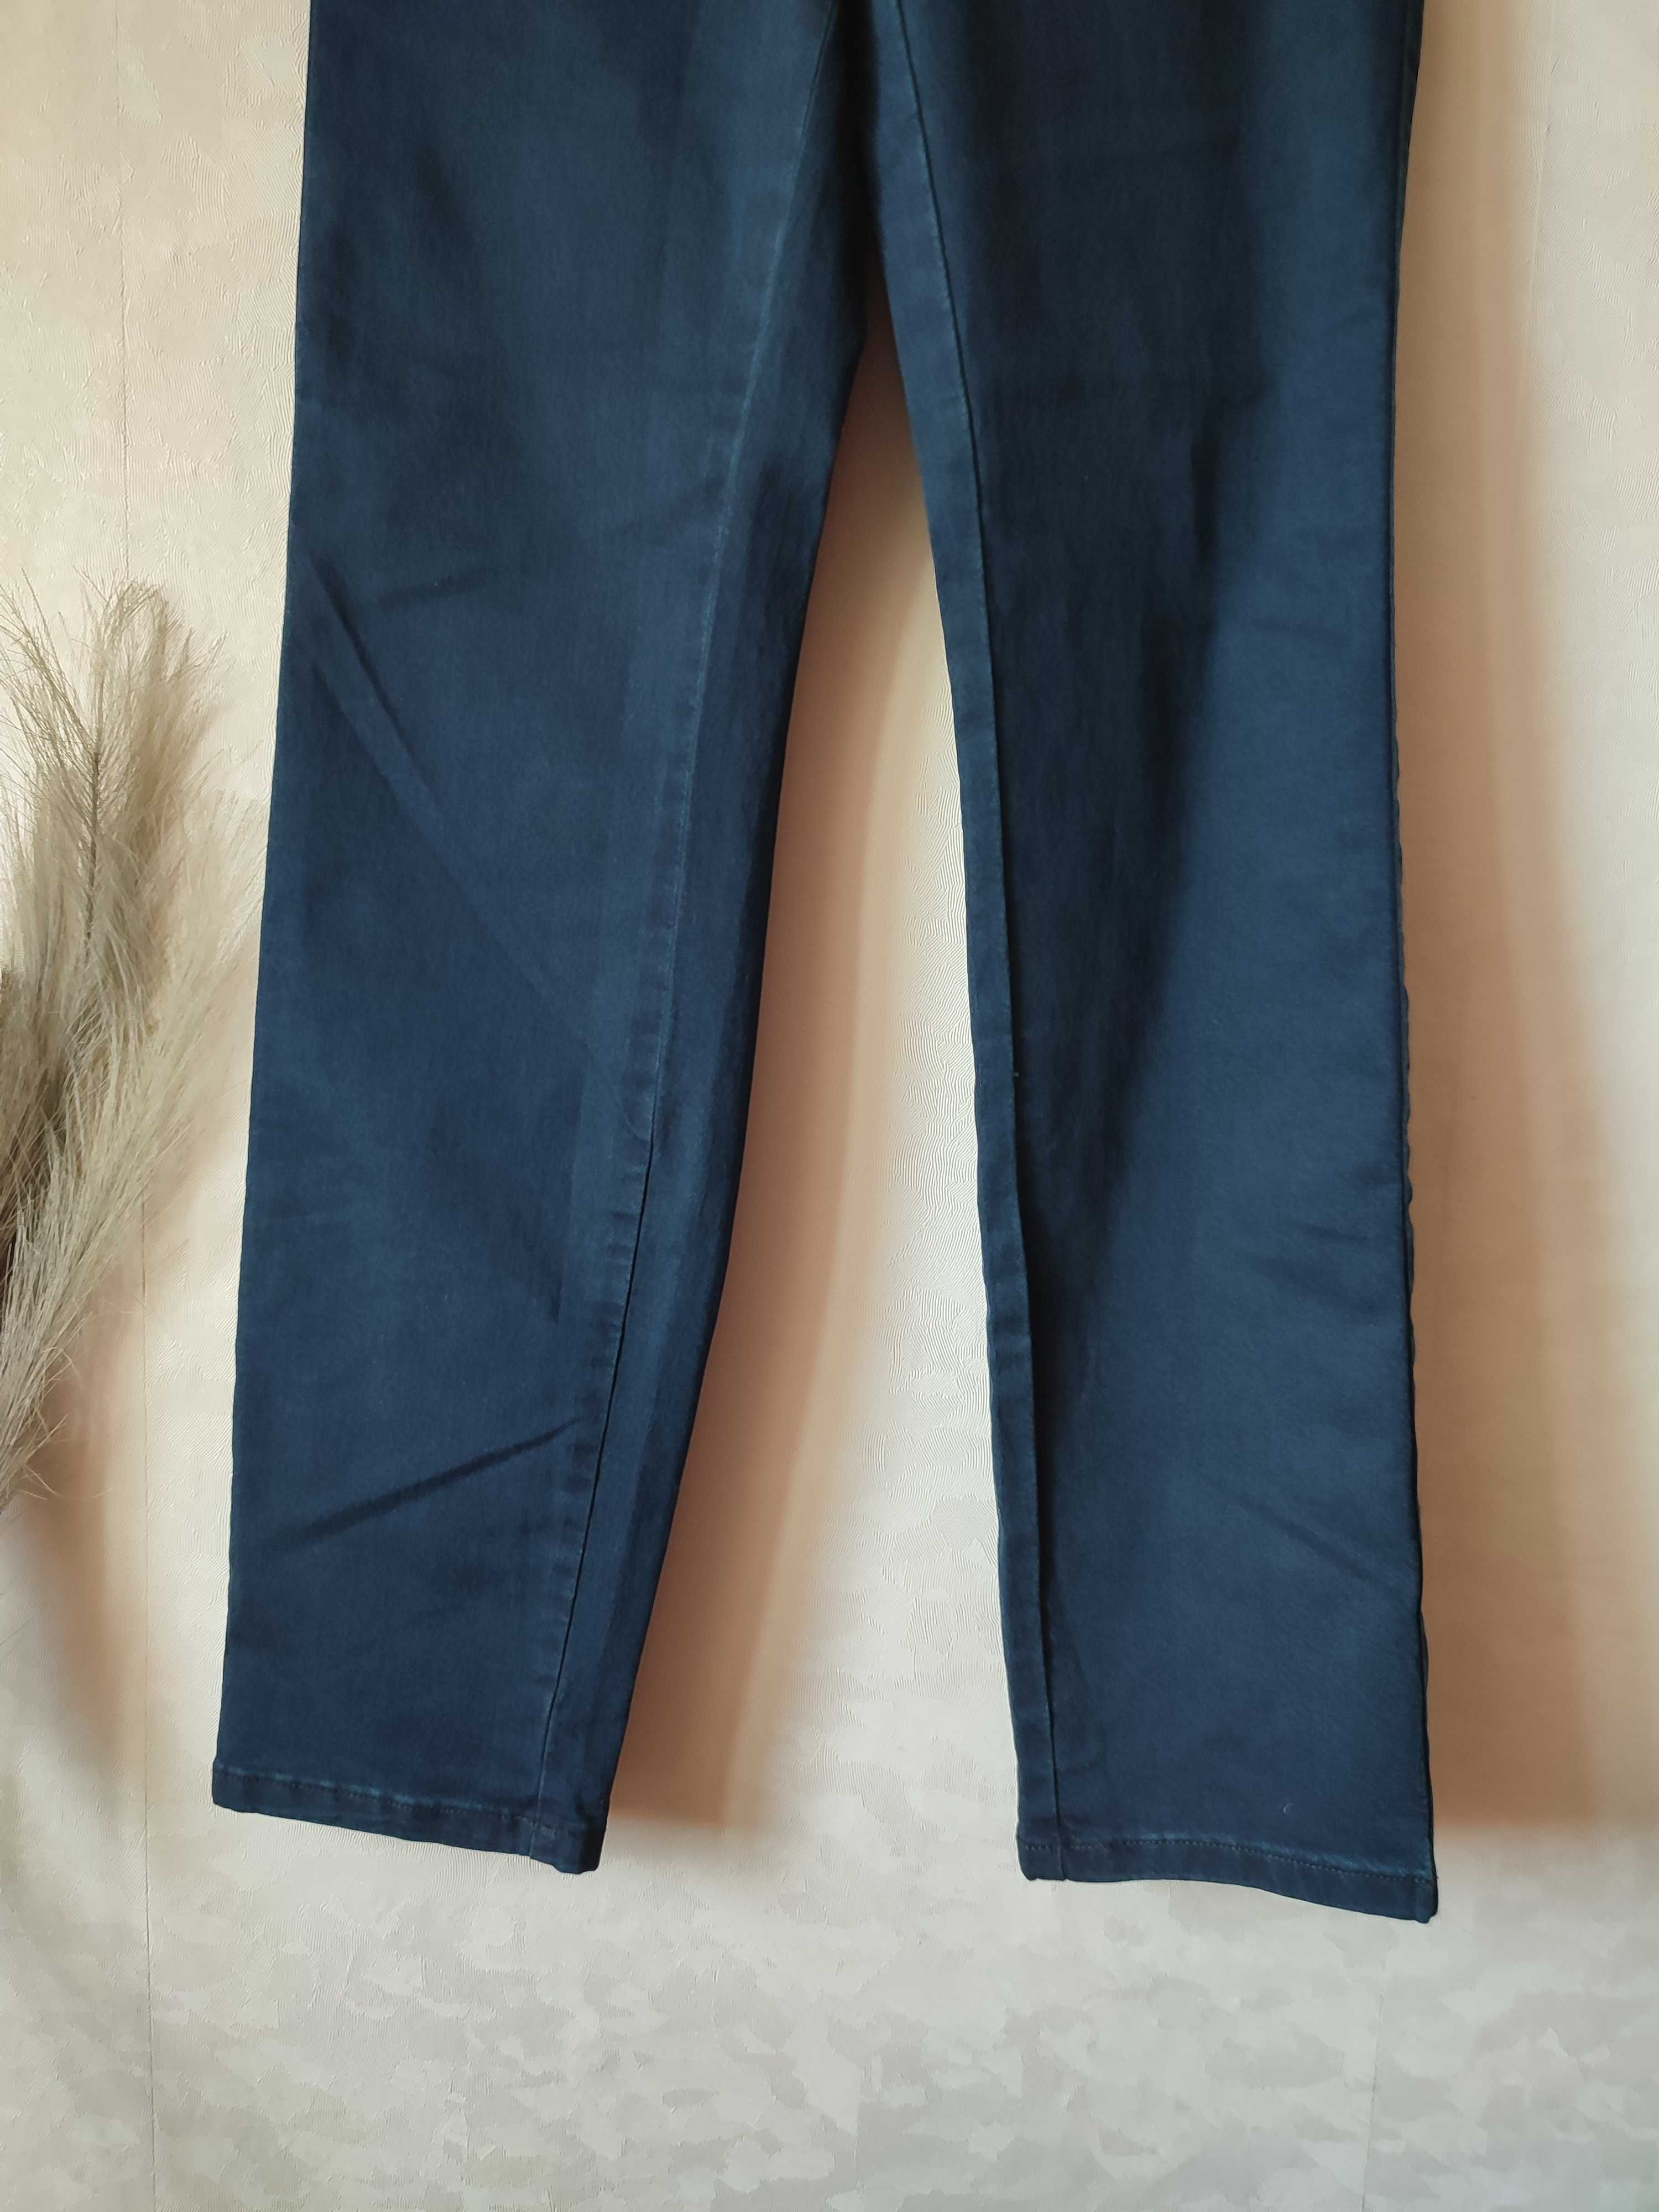 Spodnie jeansowe Kaffe S niebieskie z bawełny długie